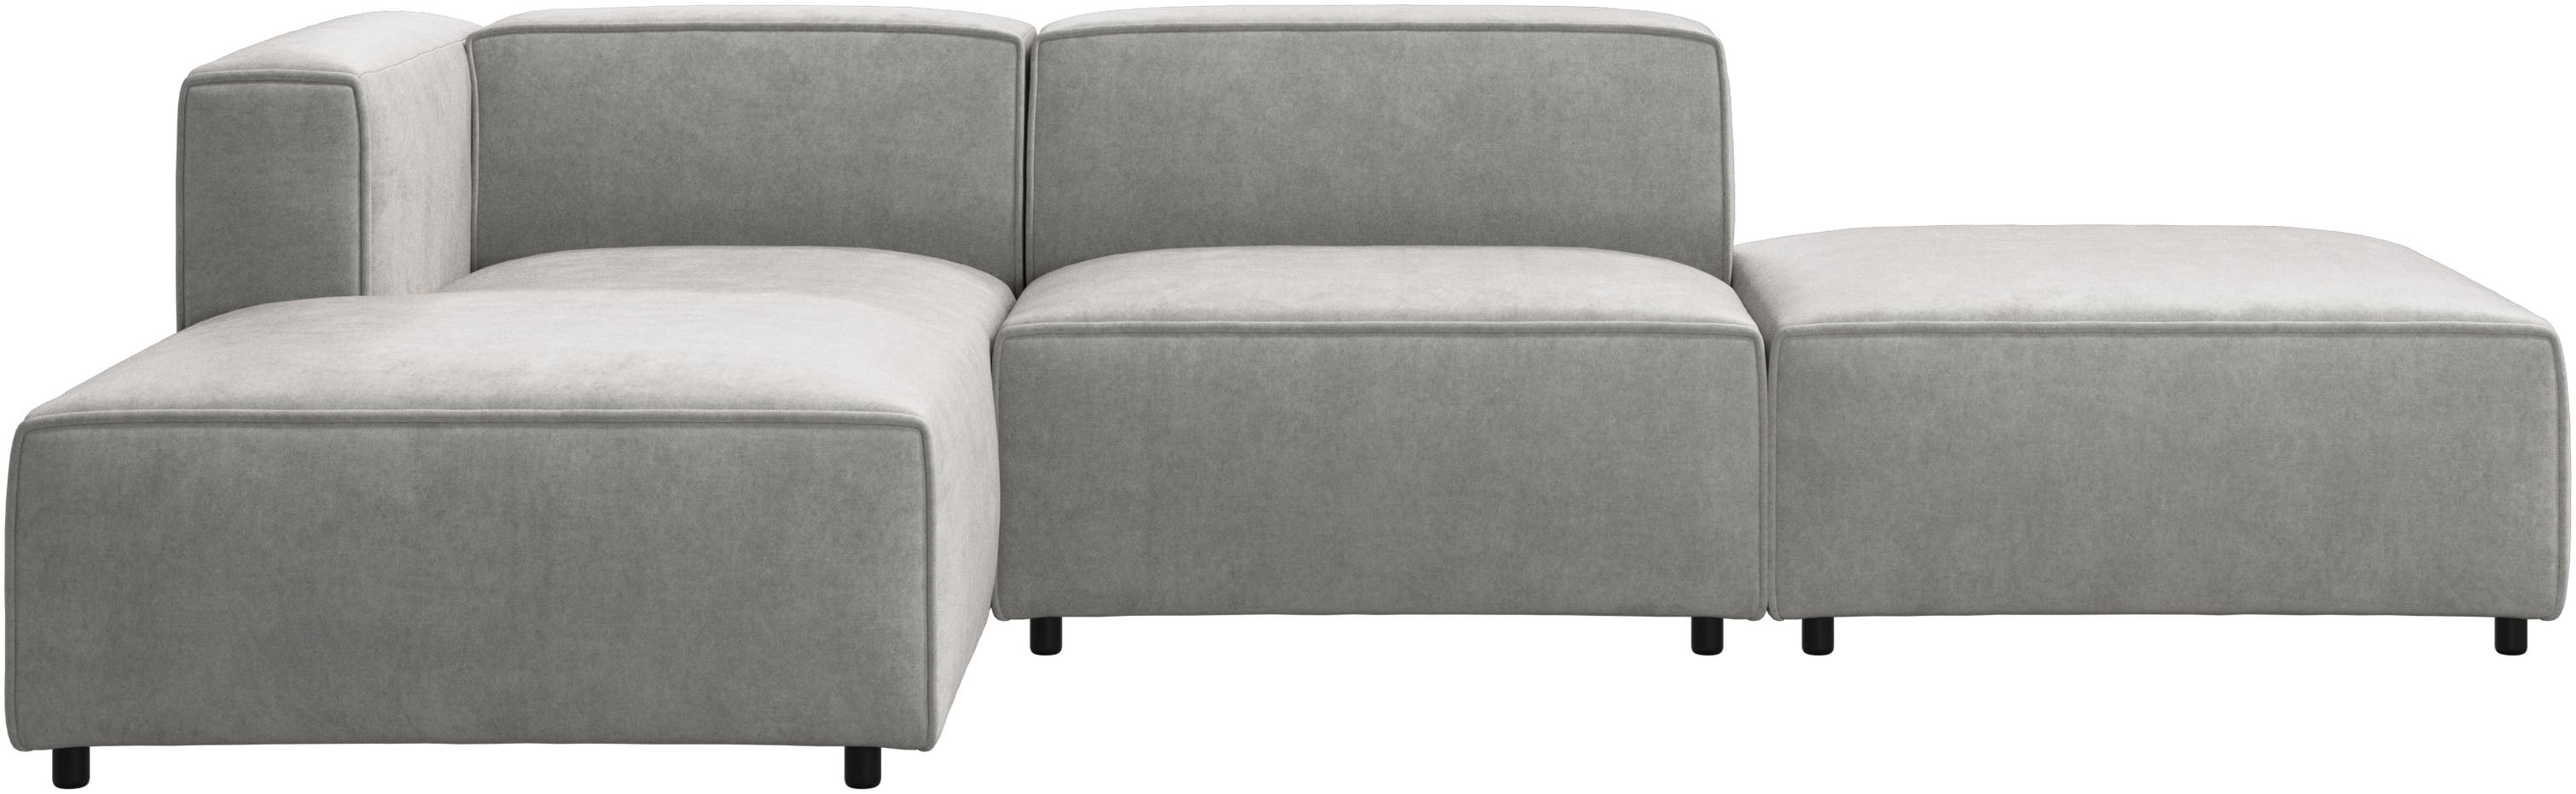 Carmo sofa med lounge- og hvilemodul